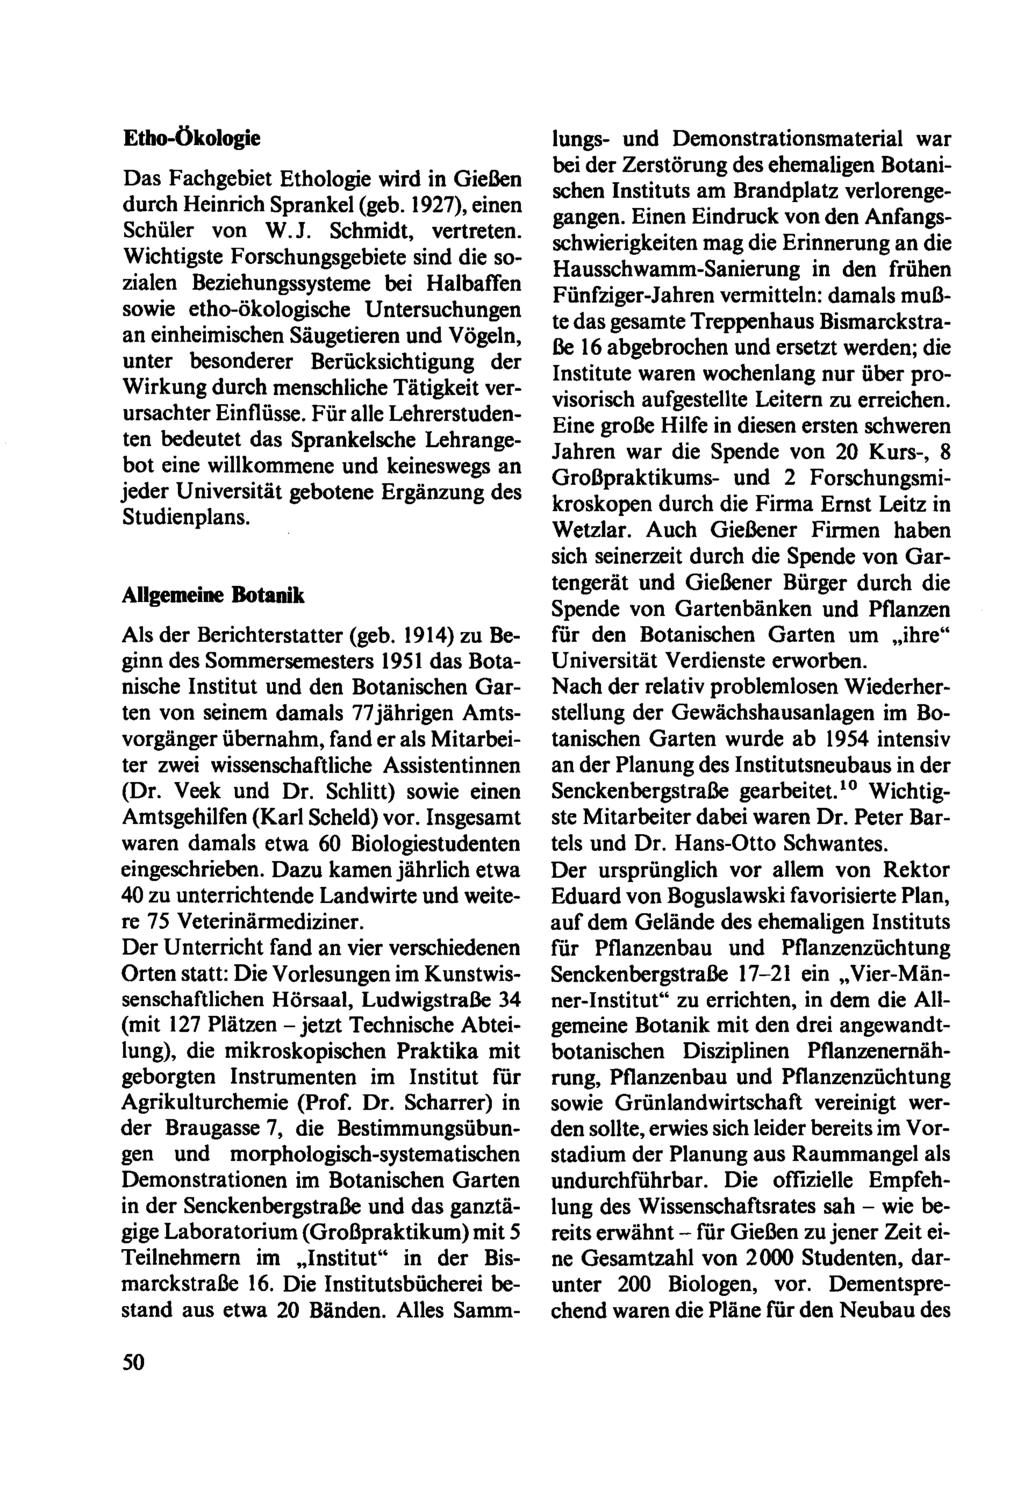 Etho-Ökologie Das Fachgebiet Ethologie wird in Gießen durch Heinrich Sprankel (geb. 1927), einen Schüler von W.J. Schmidt, vertreten.